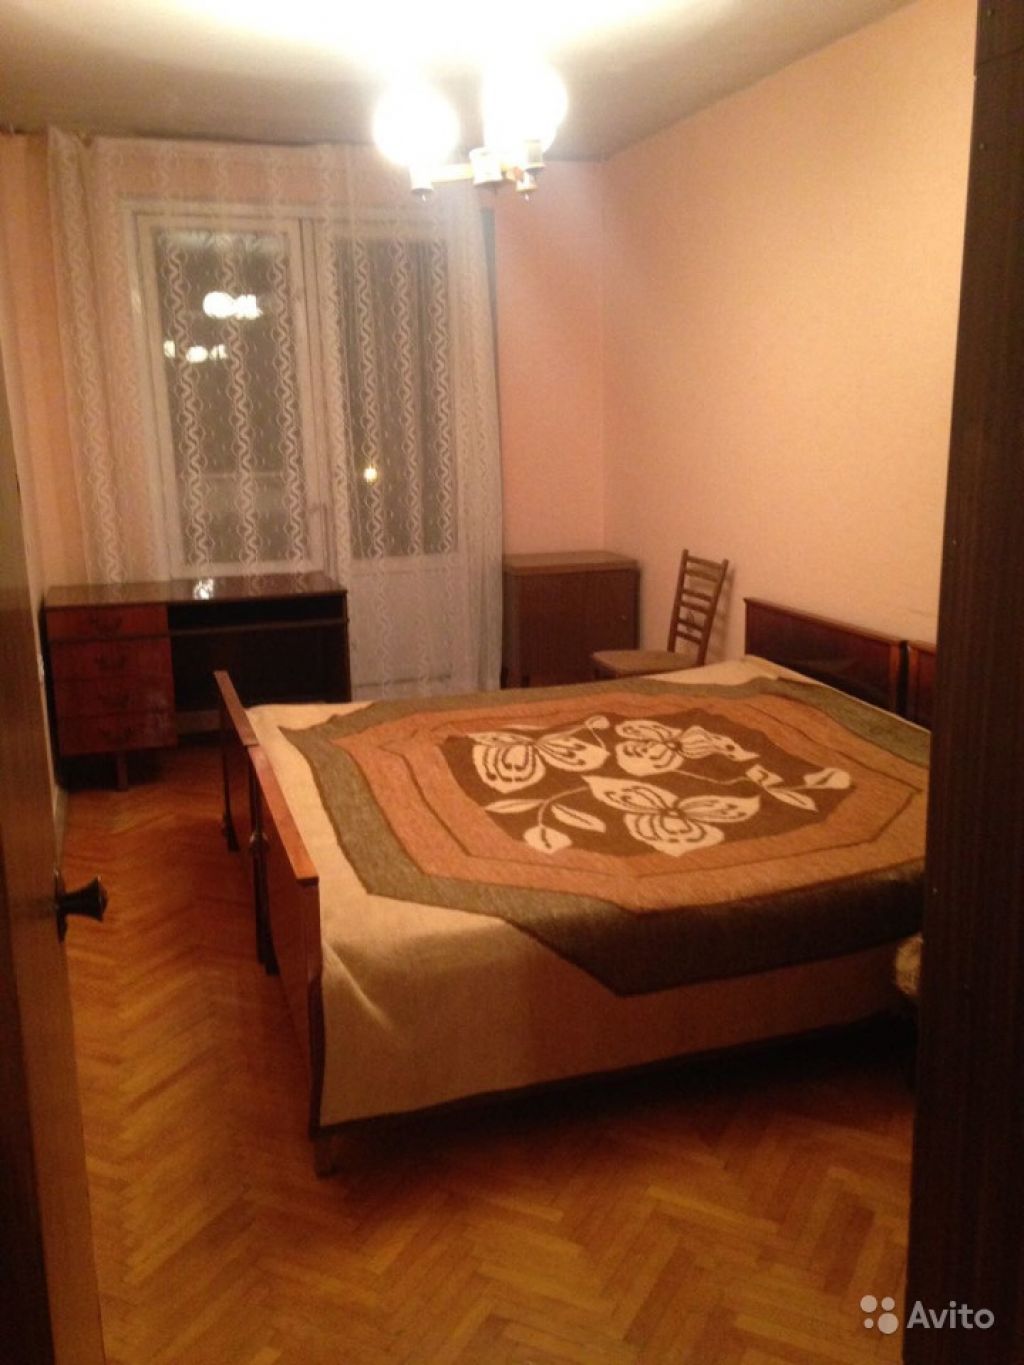 Сдам квартиру 2-к квартира 50 м² на 8 этаже 9-этажного панельного дома в Москве. Фото 1